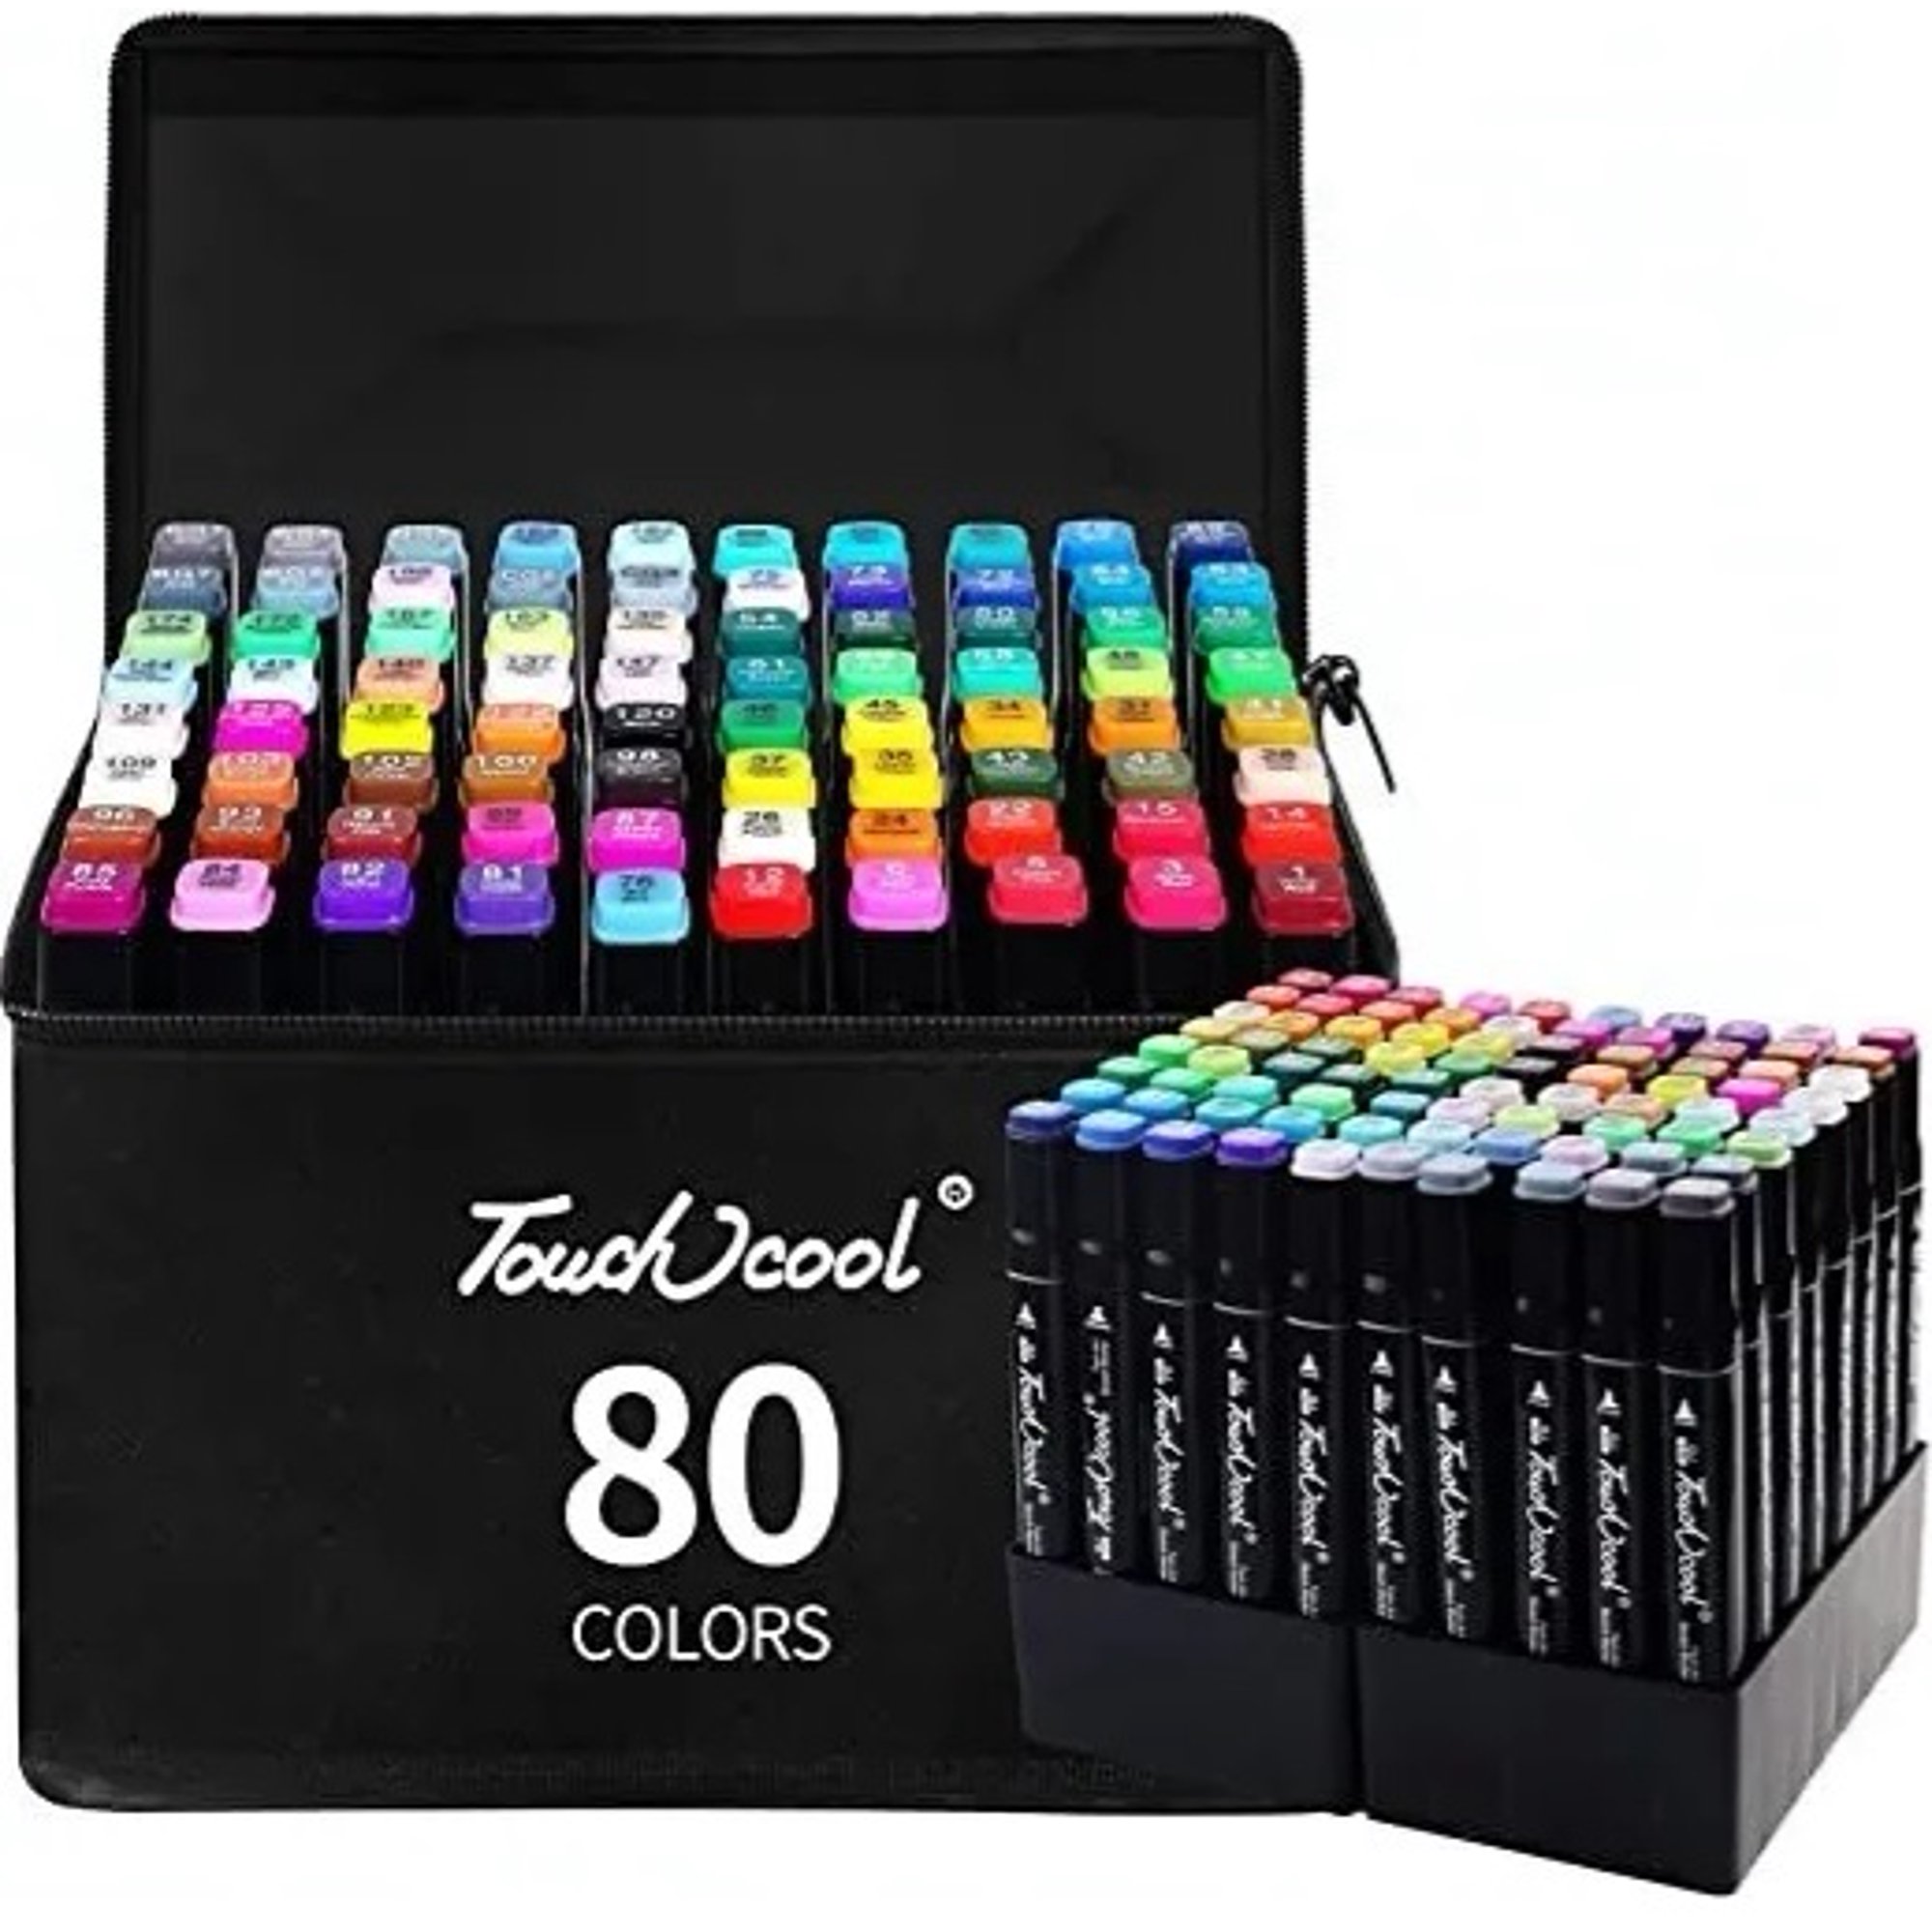 Set 80 colores plumones doble punta, libreta de REGALO con gama de